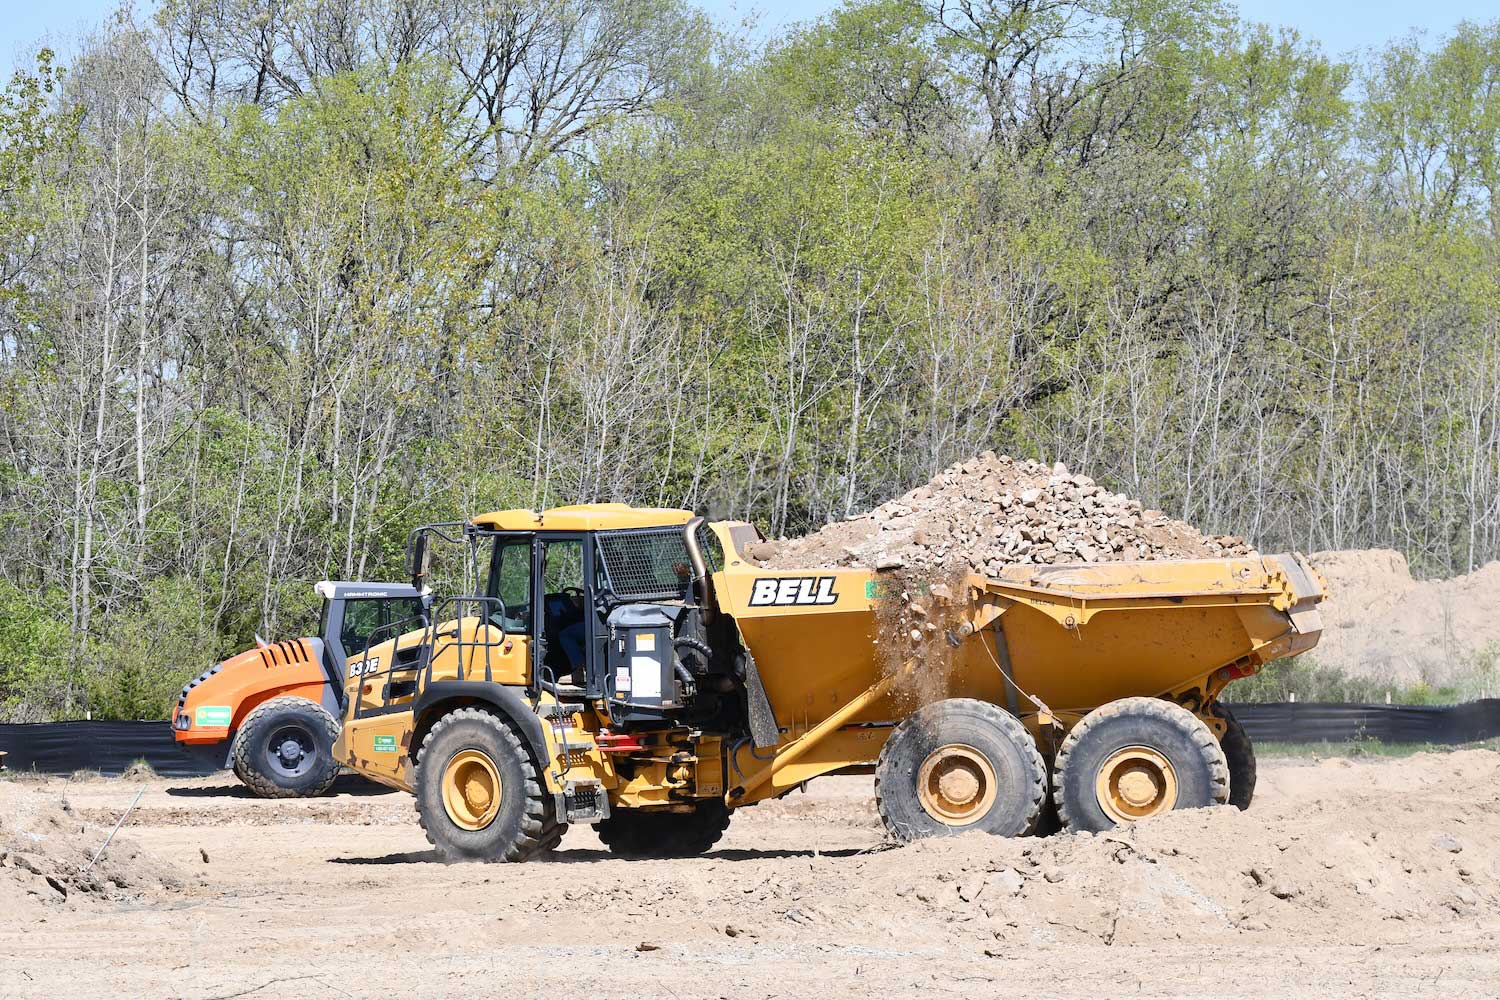 A dump truck hauling dirt driving through a construction zone.